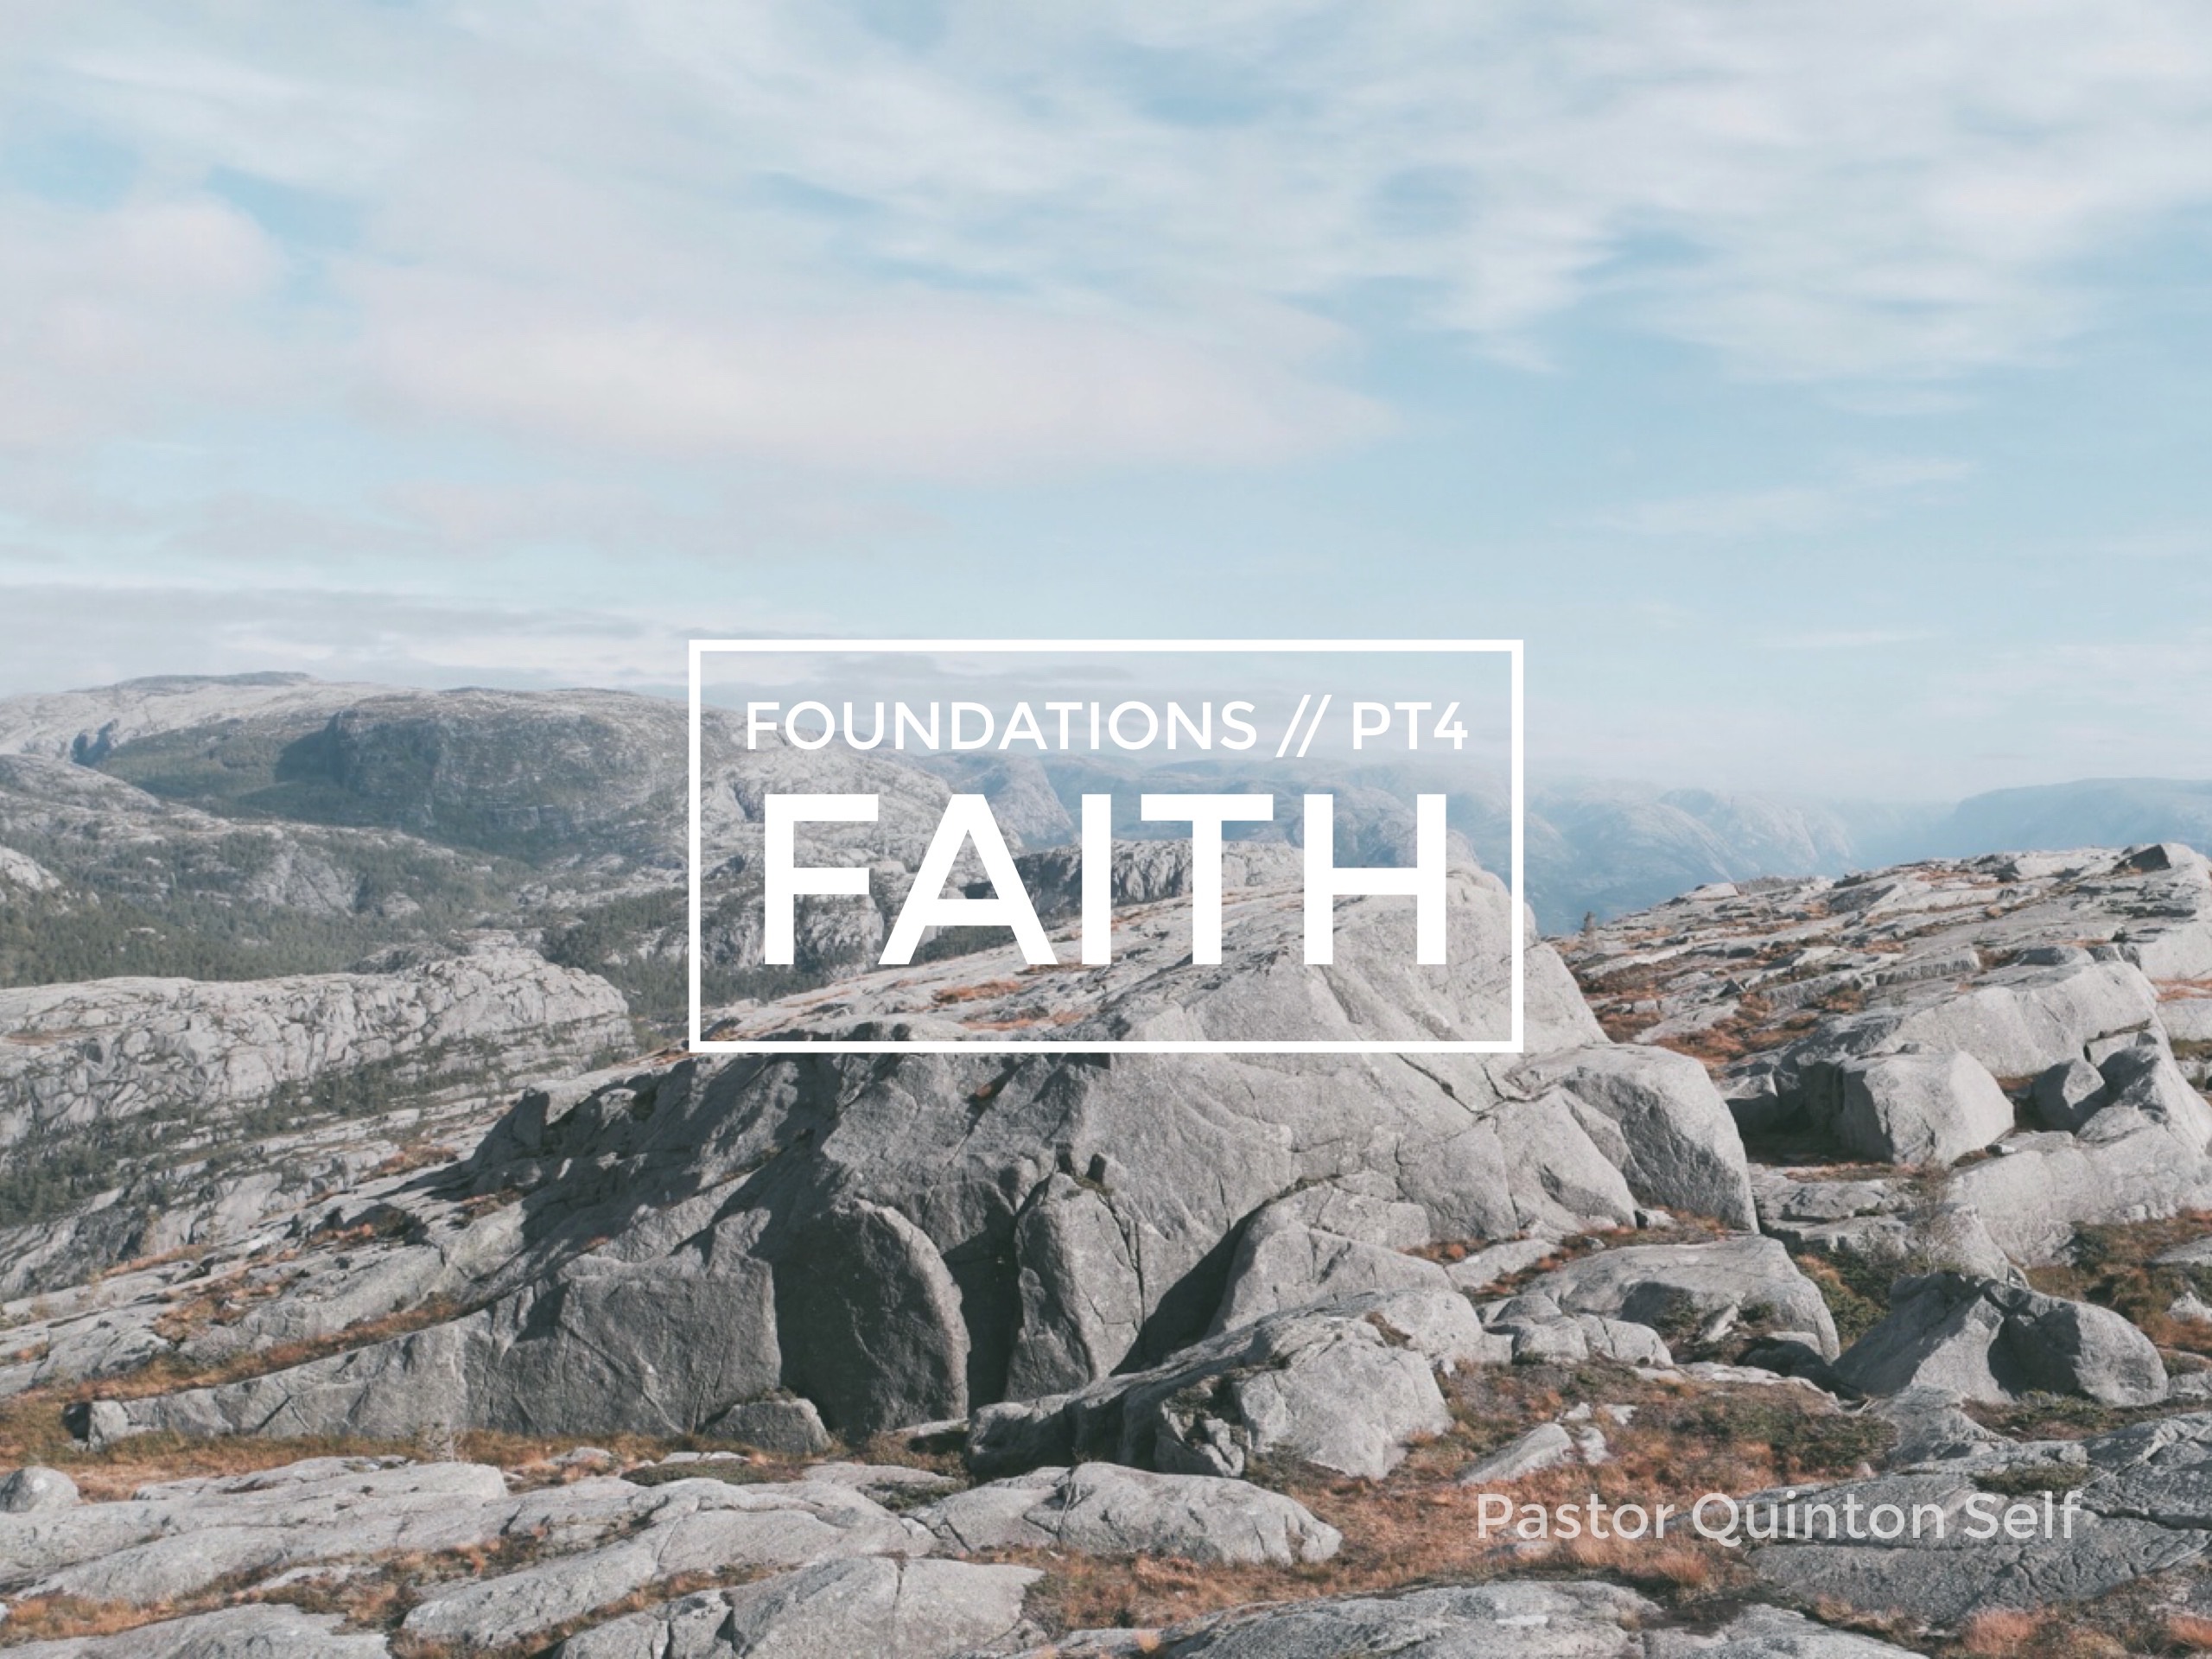 Foundations, Part 4: Faith